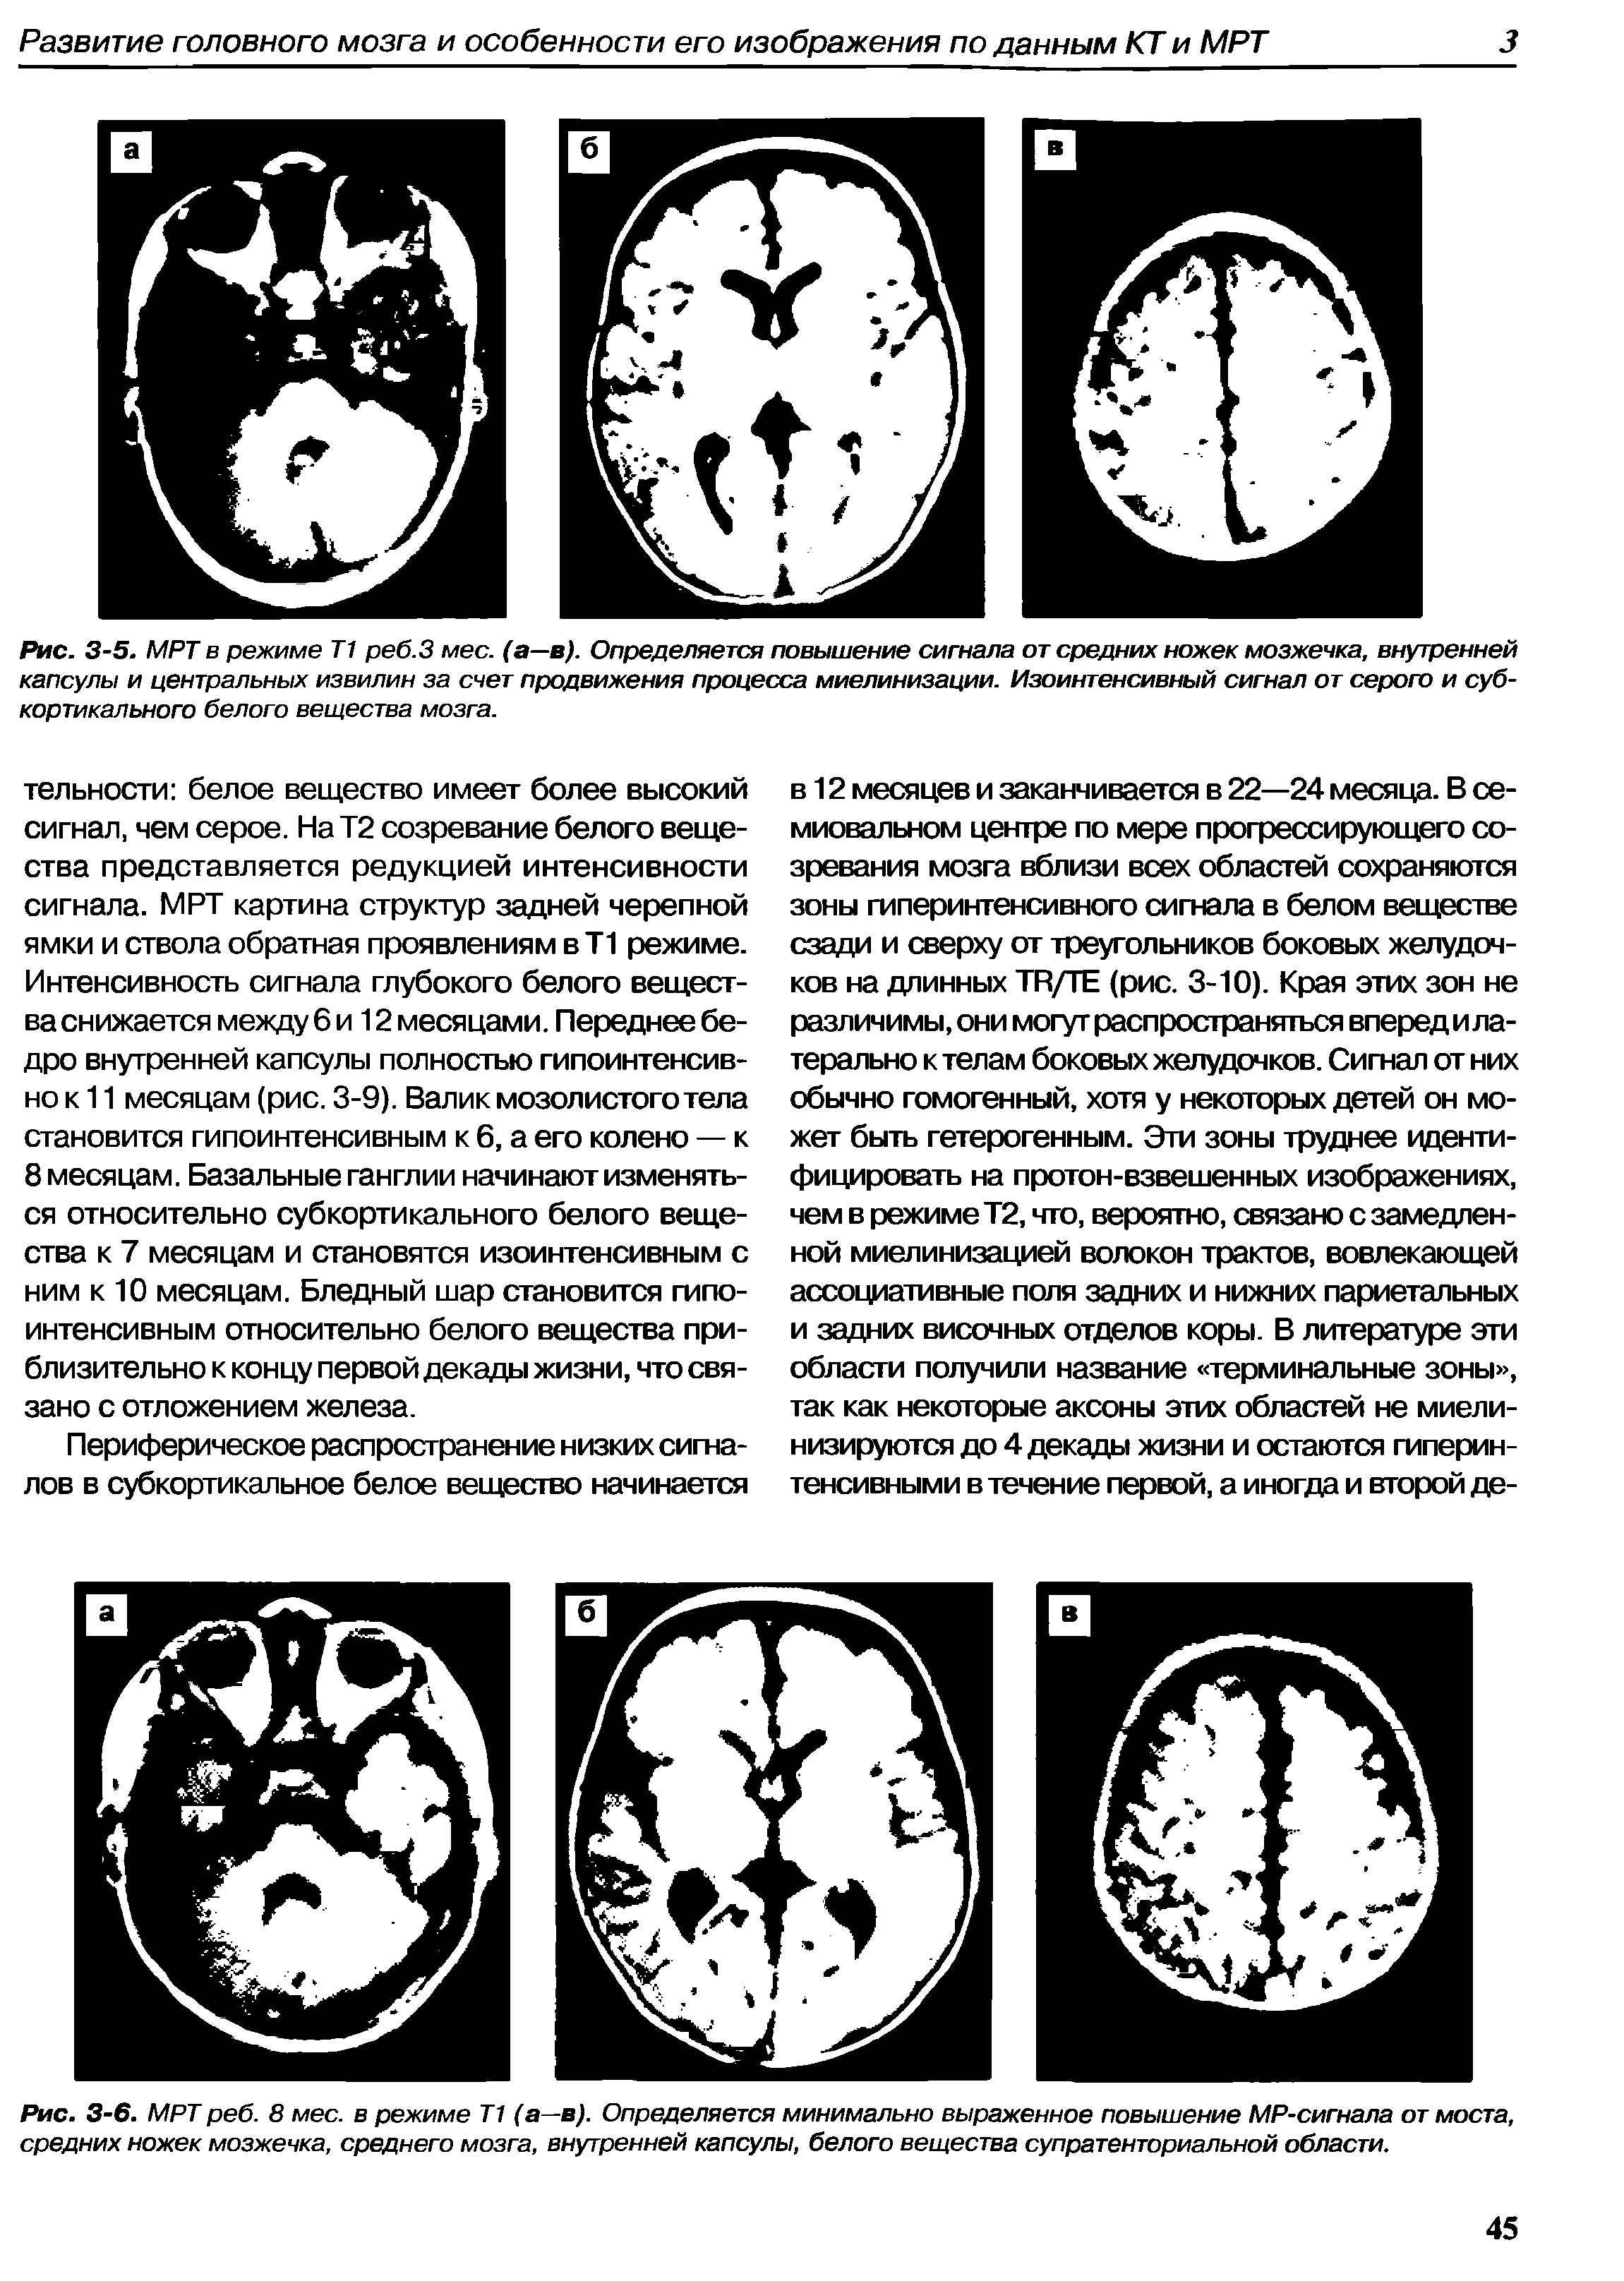 Рис. 3-6. МРТ реб. 8 мес. в режиме Т1 (а—в). Определяется минимально выраженное повышение MP-сигнала от моста, средних ножек мозжечка, среднего мозга, внутренней капсулы, белого вещества супратенториальной области.